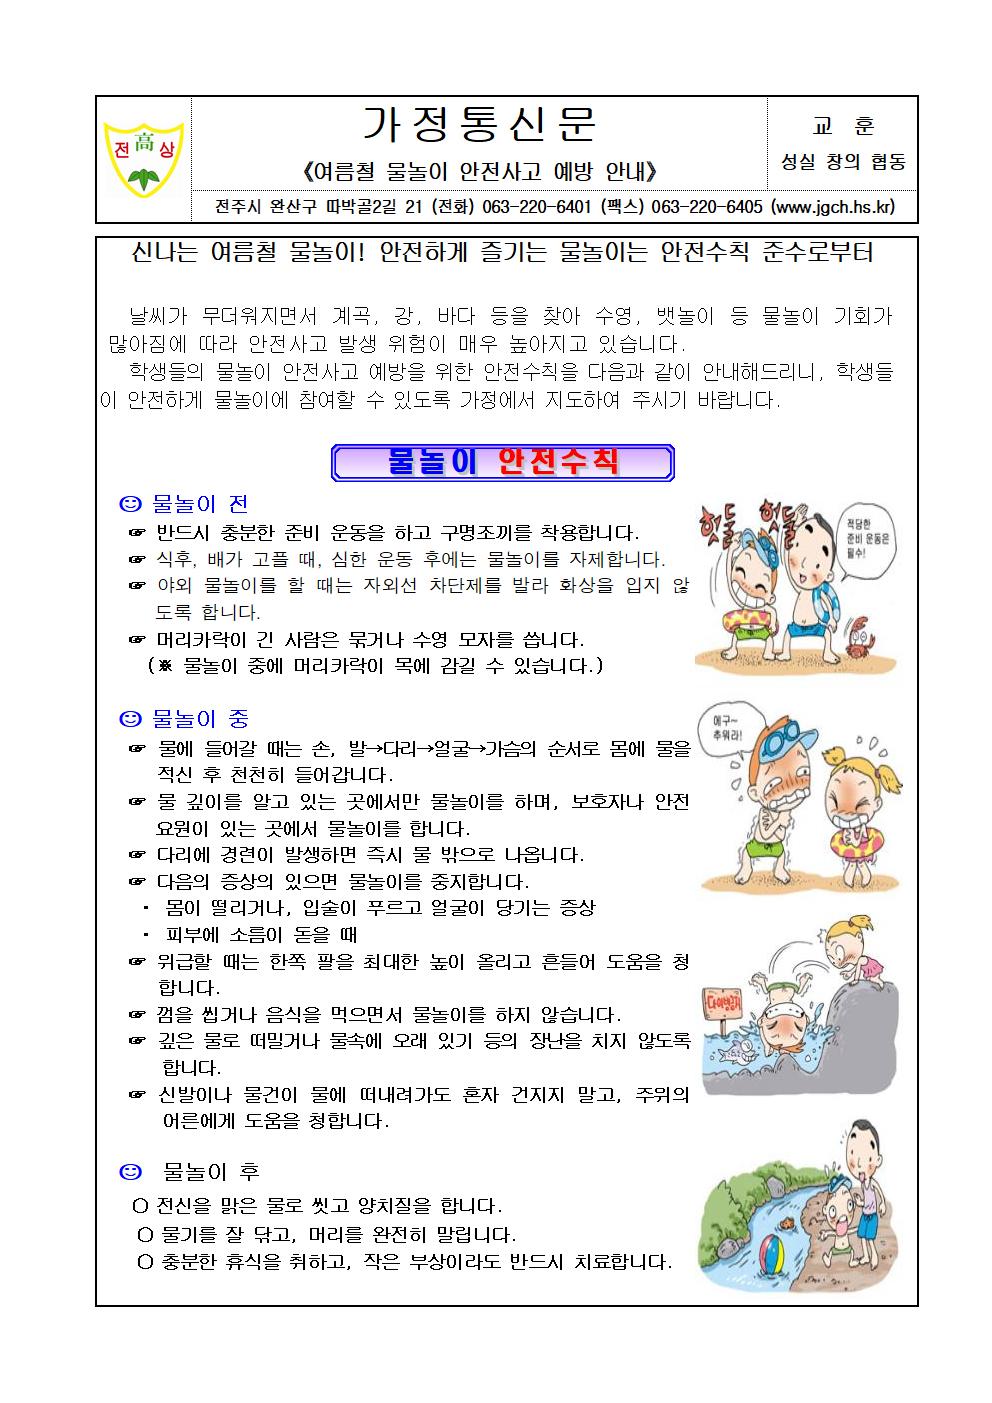 가정통신문-여름철 물놀이 안전사고 예방 안내001